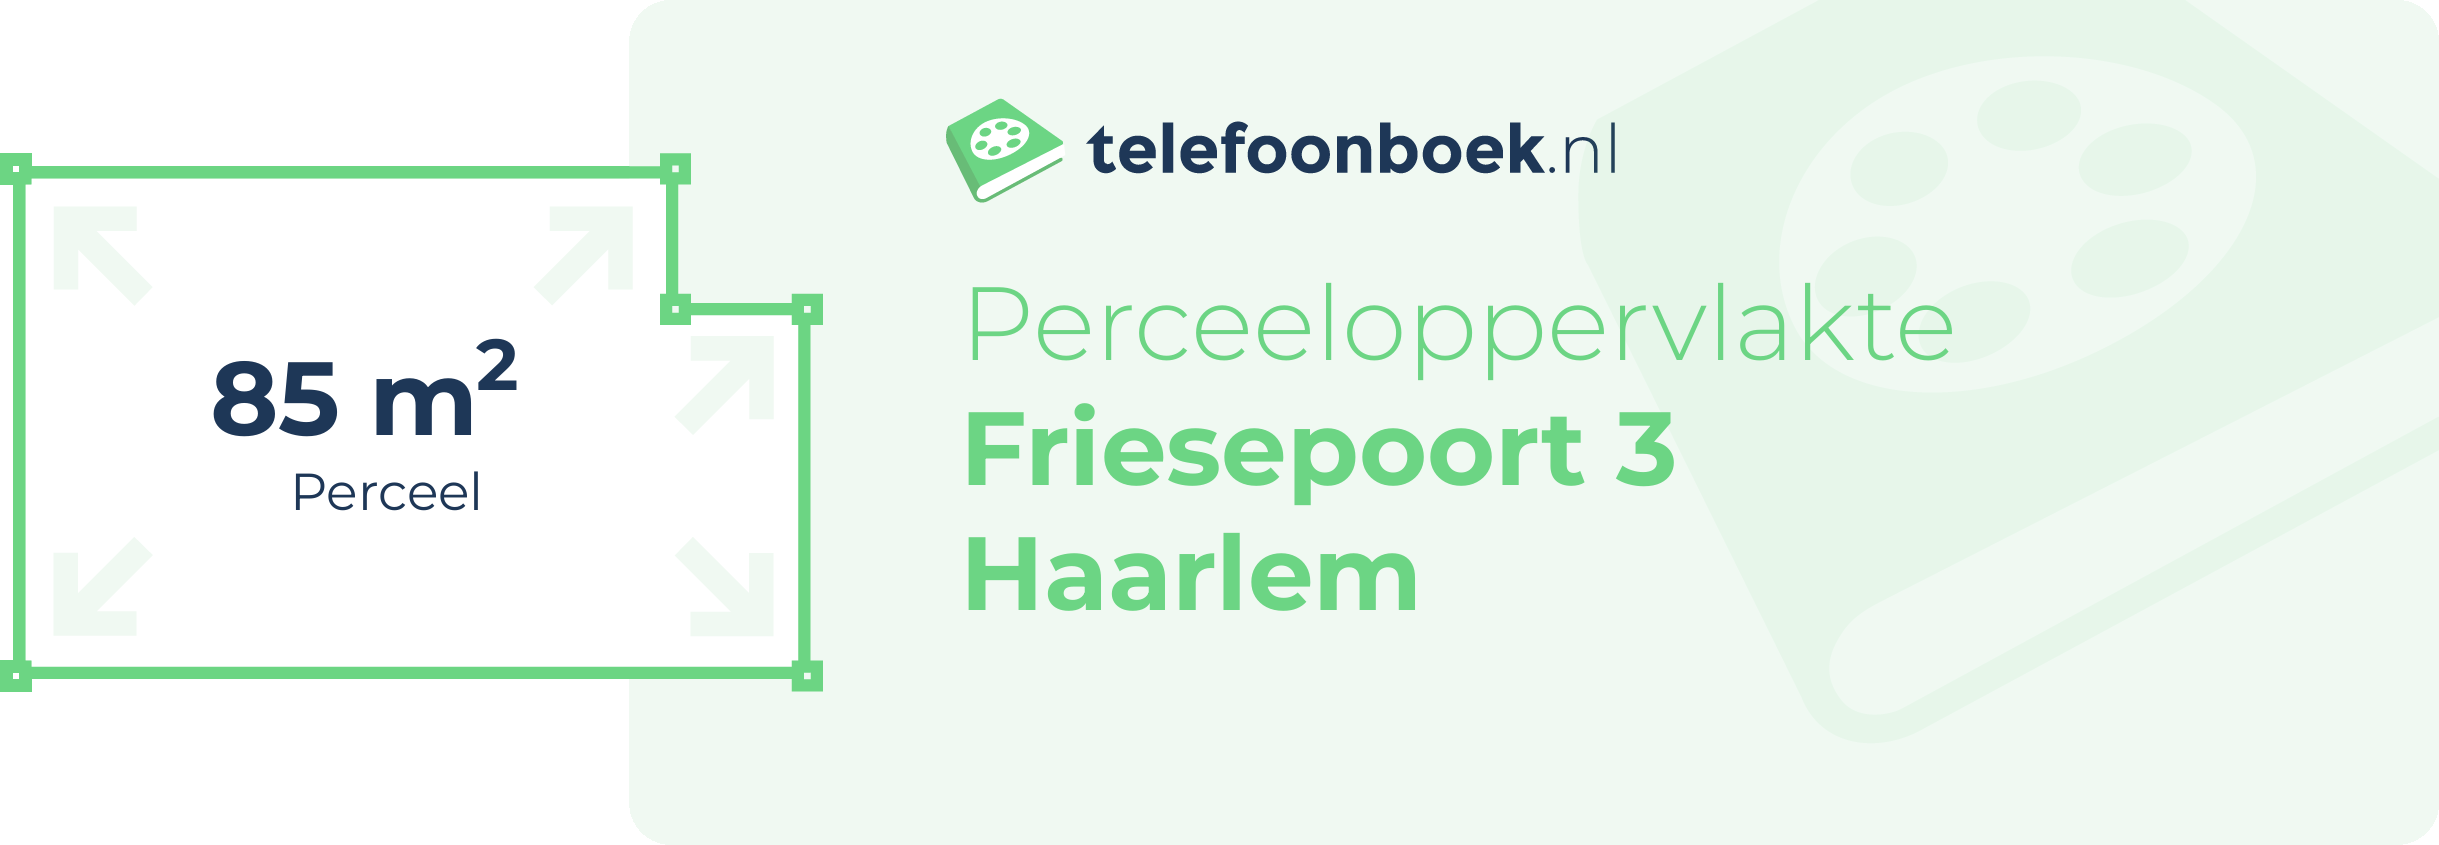 Perceeloppervlakte Friesepoort 3 Haarlem